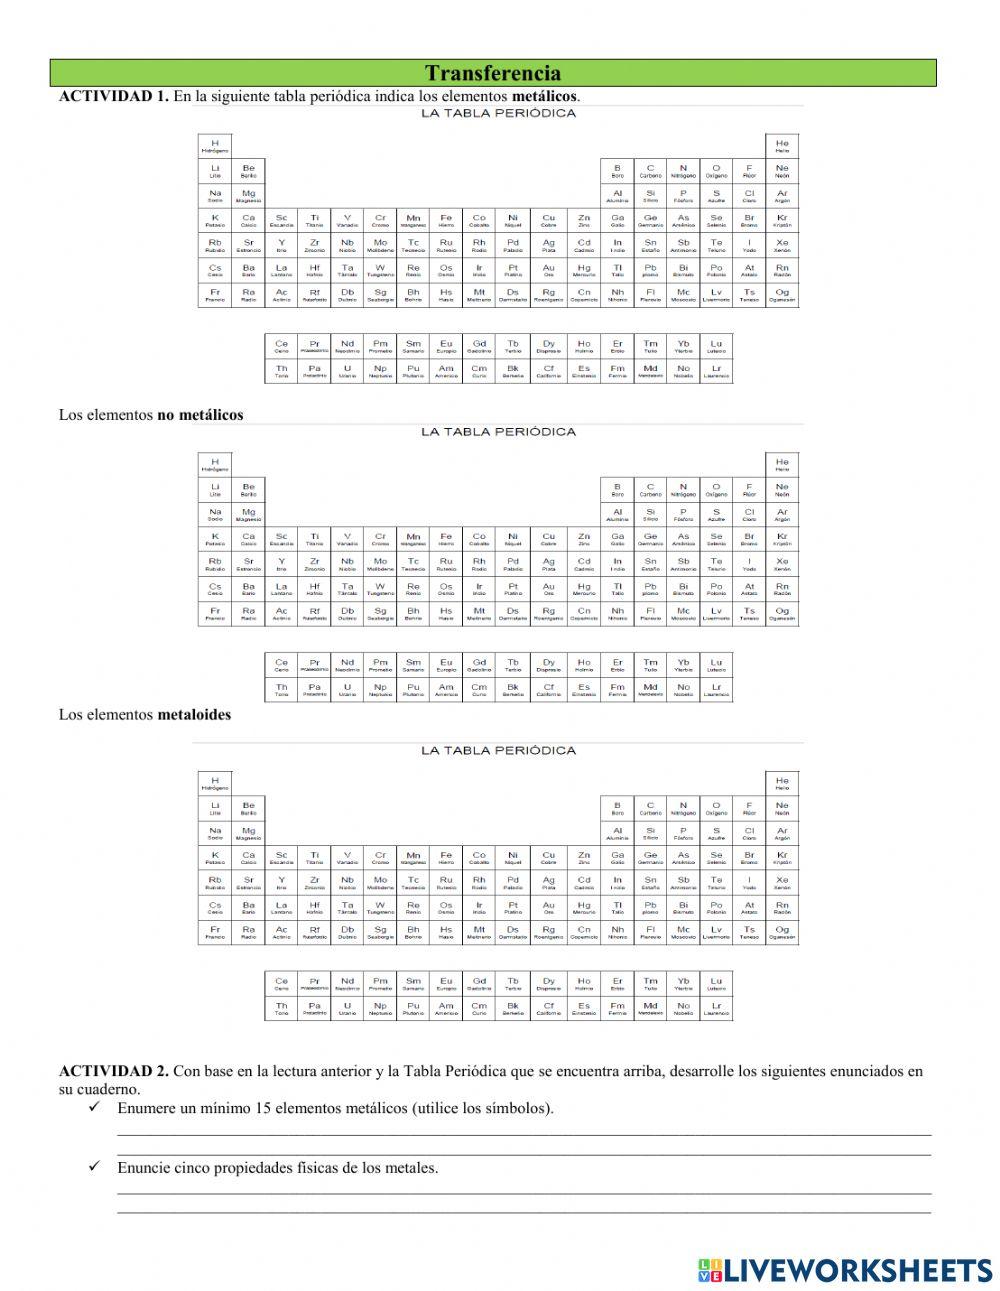 Propiedades fisicas y quimicas de elementos de la tabla periódica